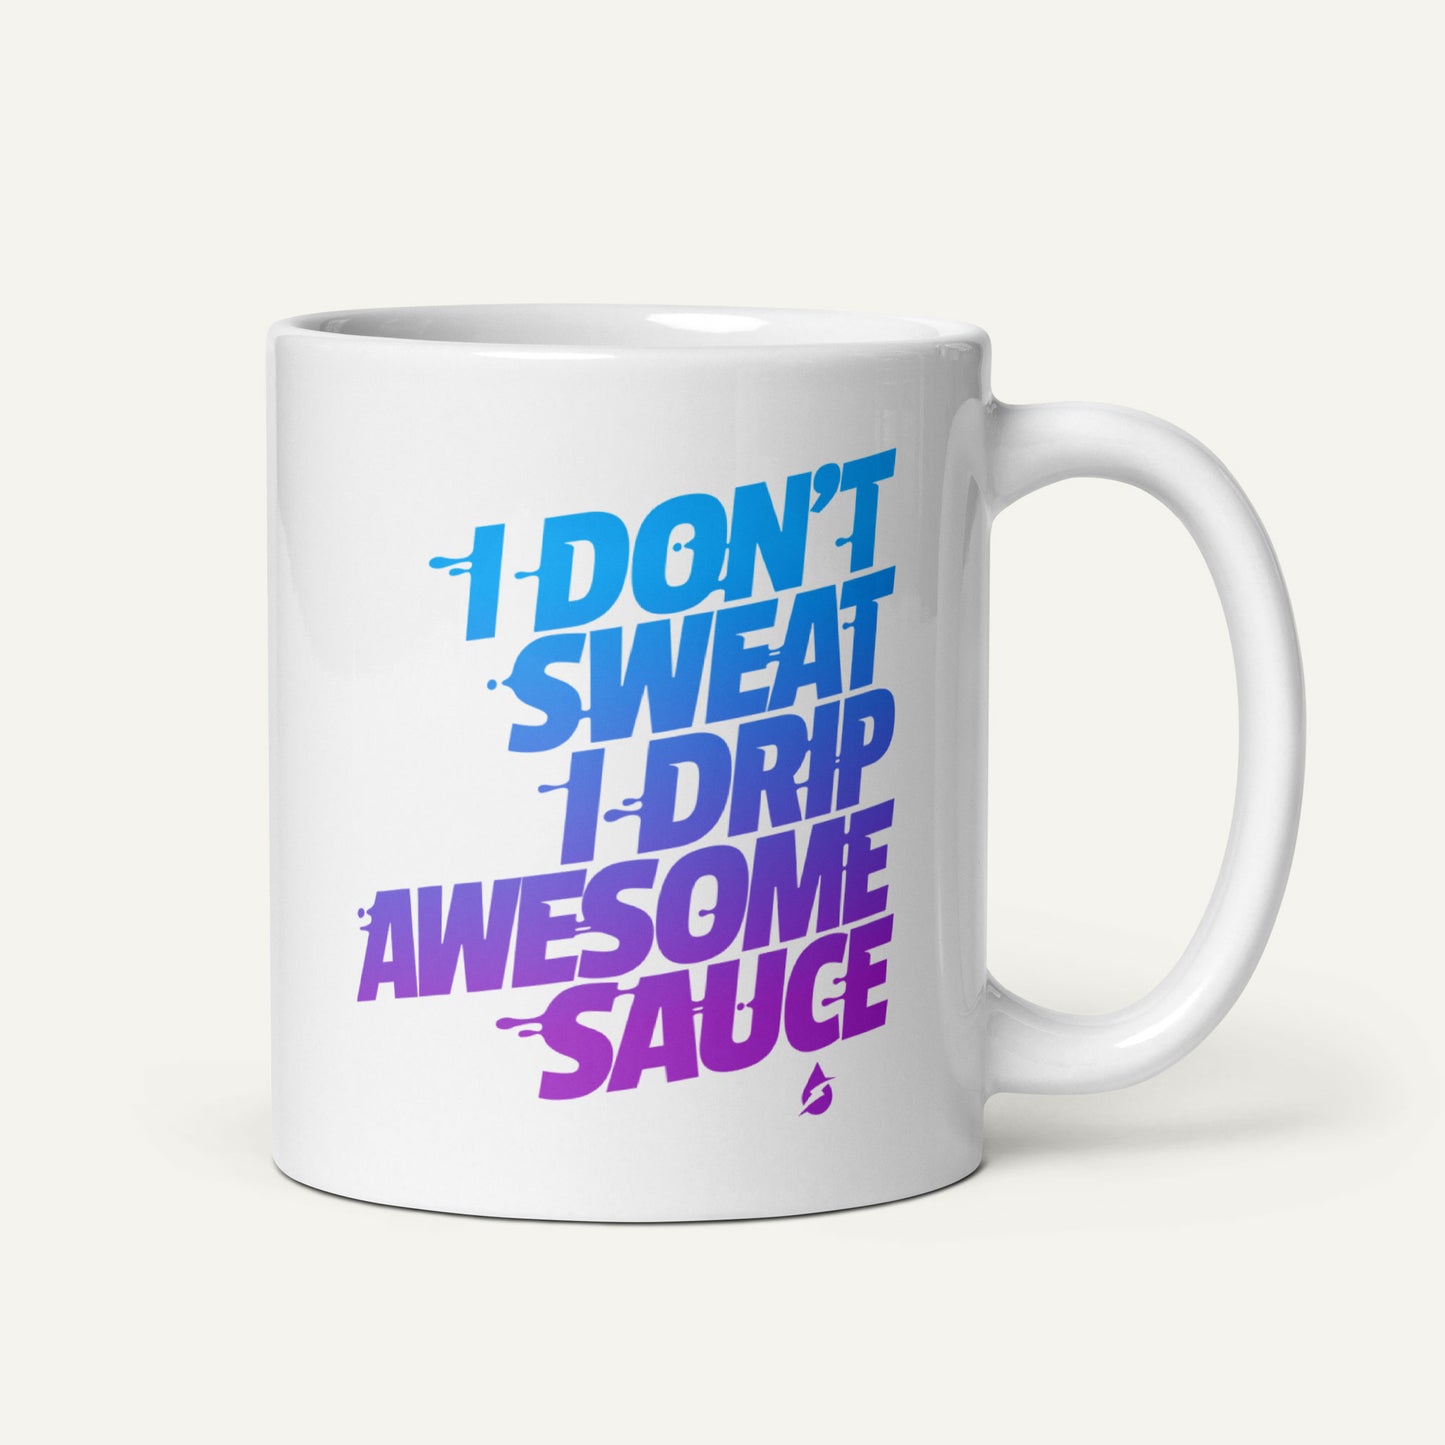 I Don't Sweat I Drip Awesome Sauce Mug